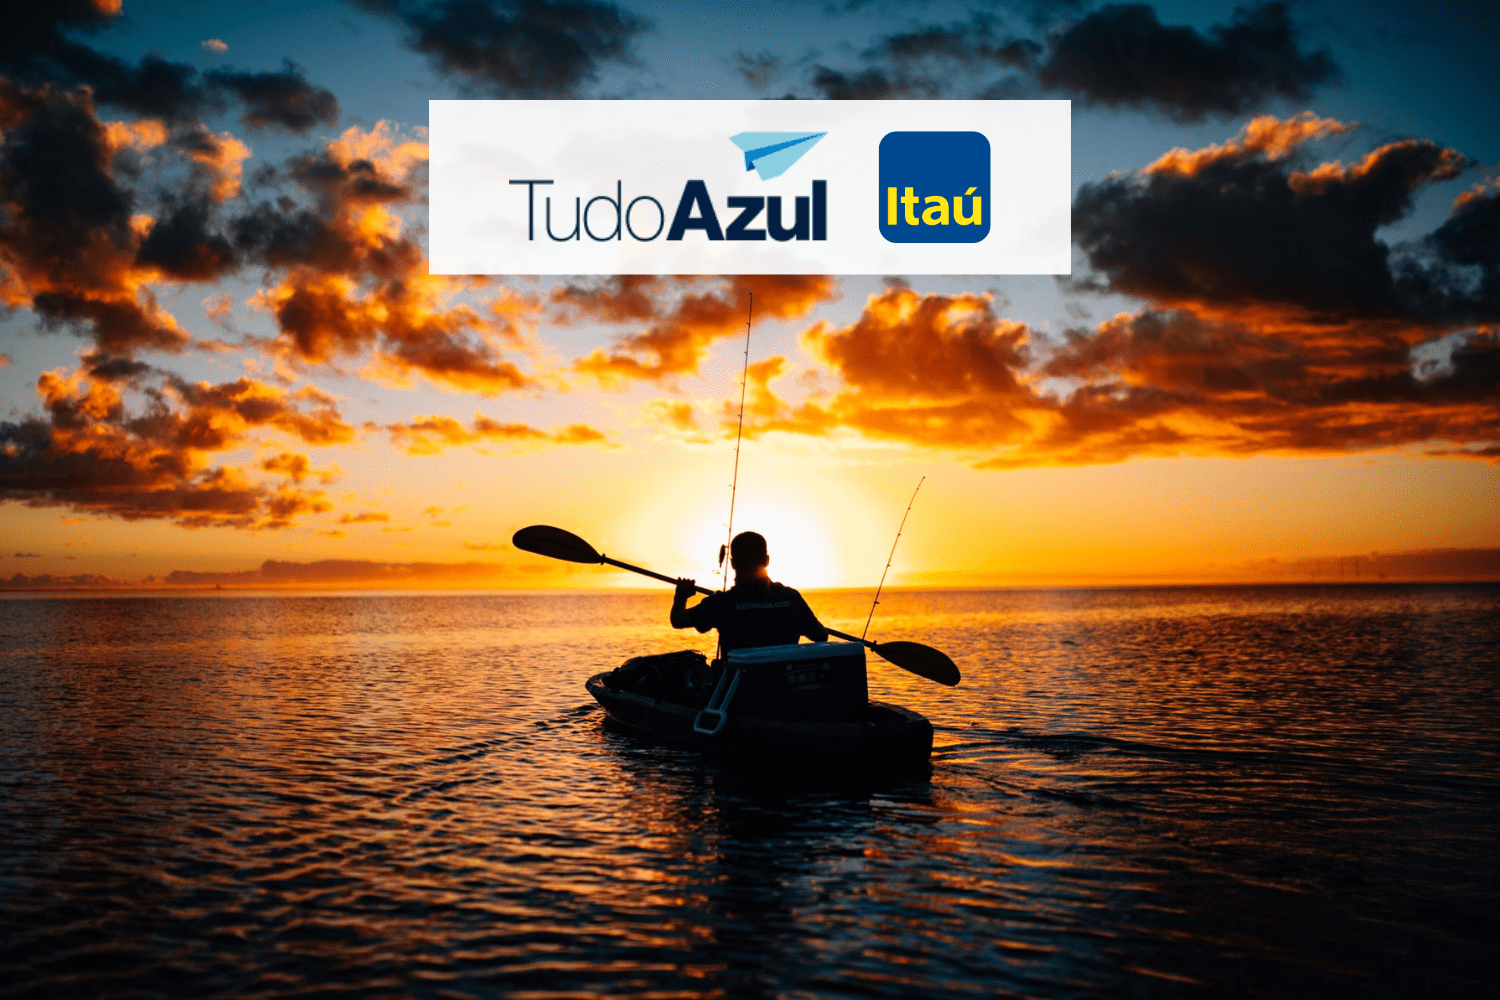 pessoa navegando em um caiaque com logo TudoAzul e Itaú bônus TudoAzul